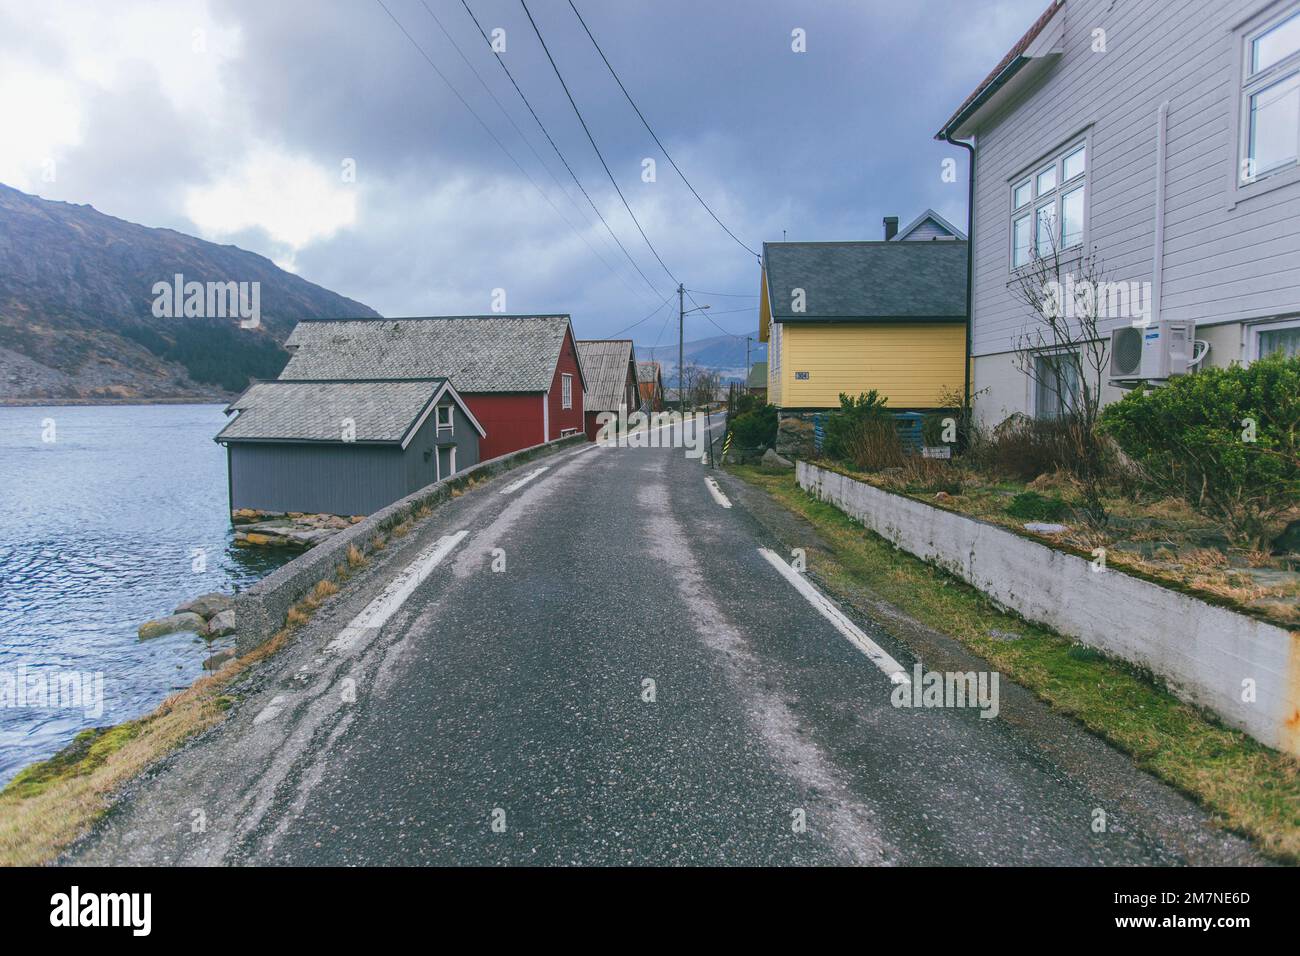 Einsame Fischerhütte an der Straße am Fjord in Norwegen, typische Fjordlandschaft mit kleinen Inseln, Abgeschiedenheit von der Außenwelt, Haus am See Stockfoto